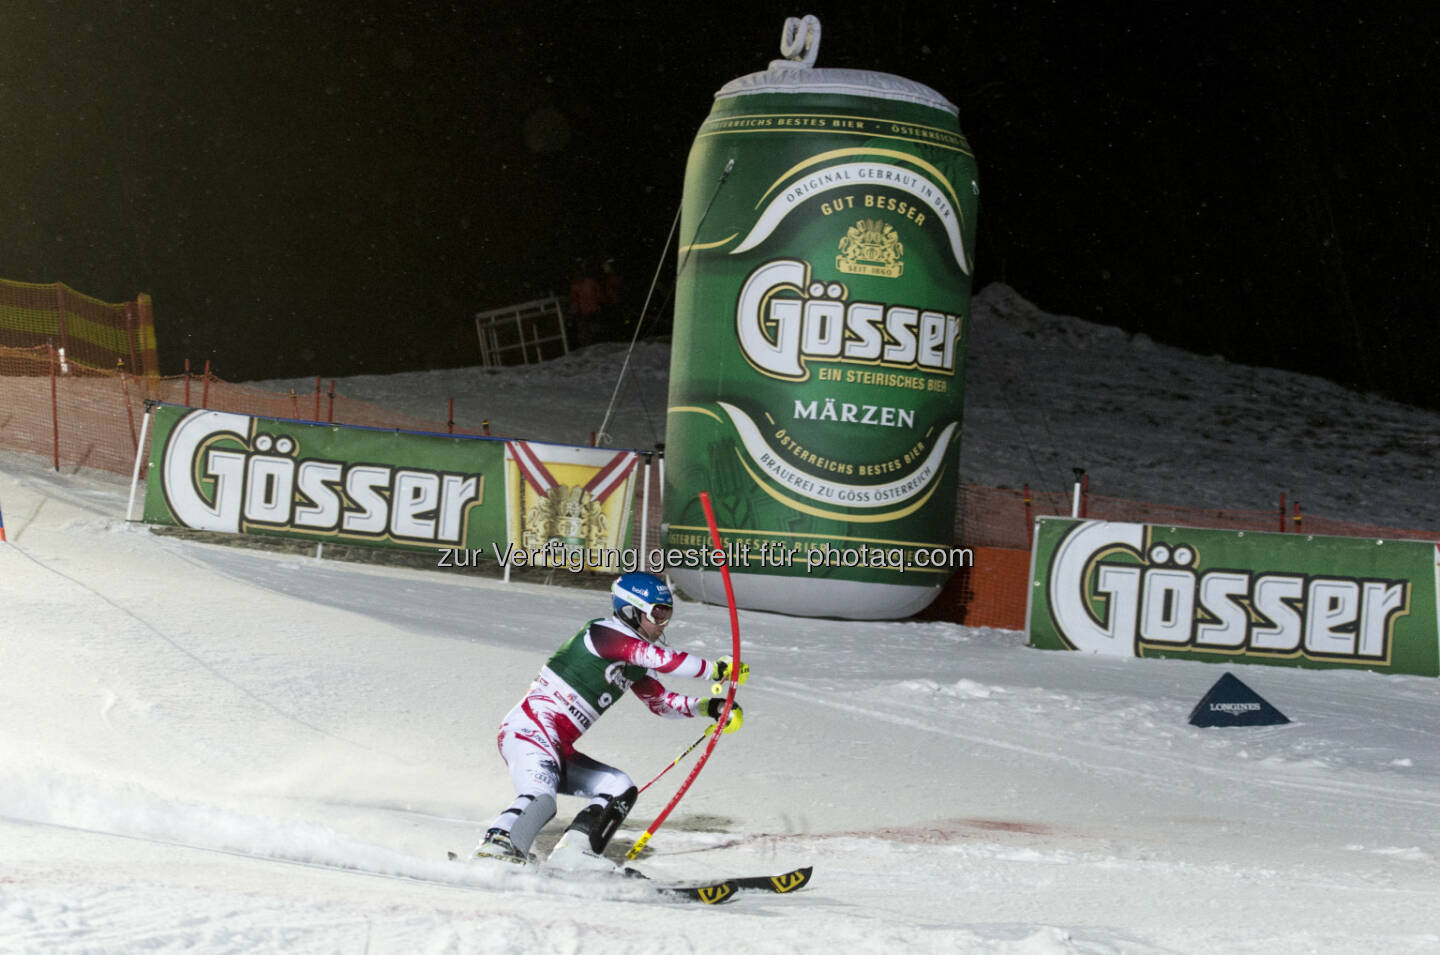 Brau Union Österreich AG: Doppelt spannend: Skiweltcup in Saalbach mit Gösser. Bei Abfahrt und Super G in Saalbach-Hinterglemm hoffen die Österreicher wieder auf Medaillen - der langjährige Sponsor Gösser unterstützt die Veranstaltung.